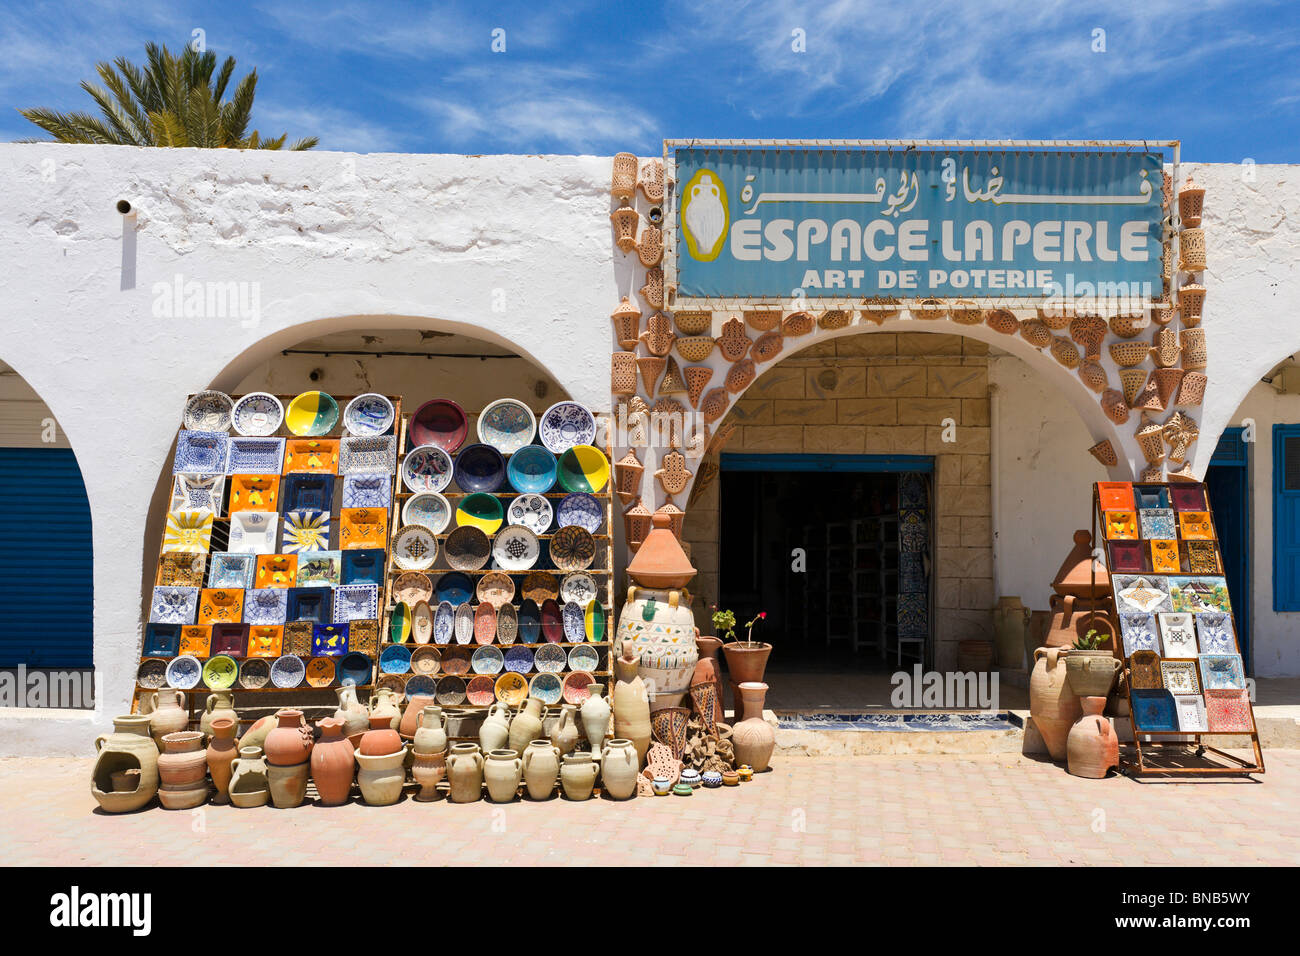 Magasin de poterie dans le village de Guellala, Djerba, Tunisie Banque D'Images